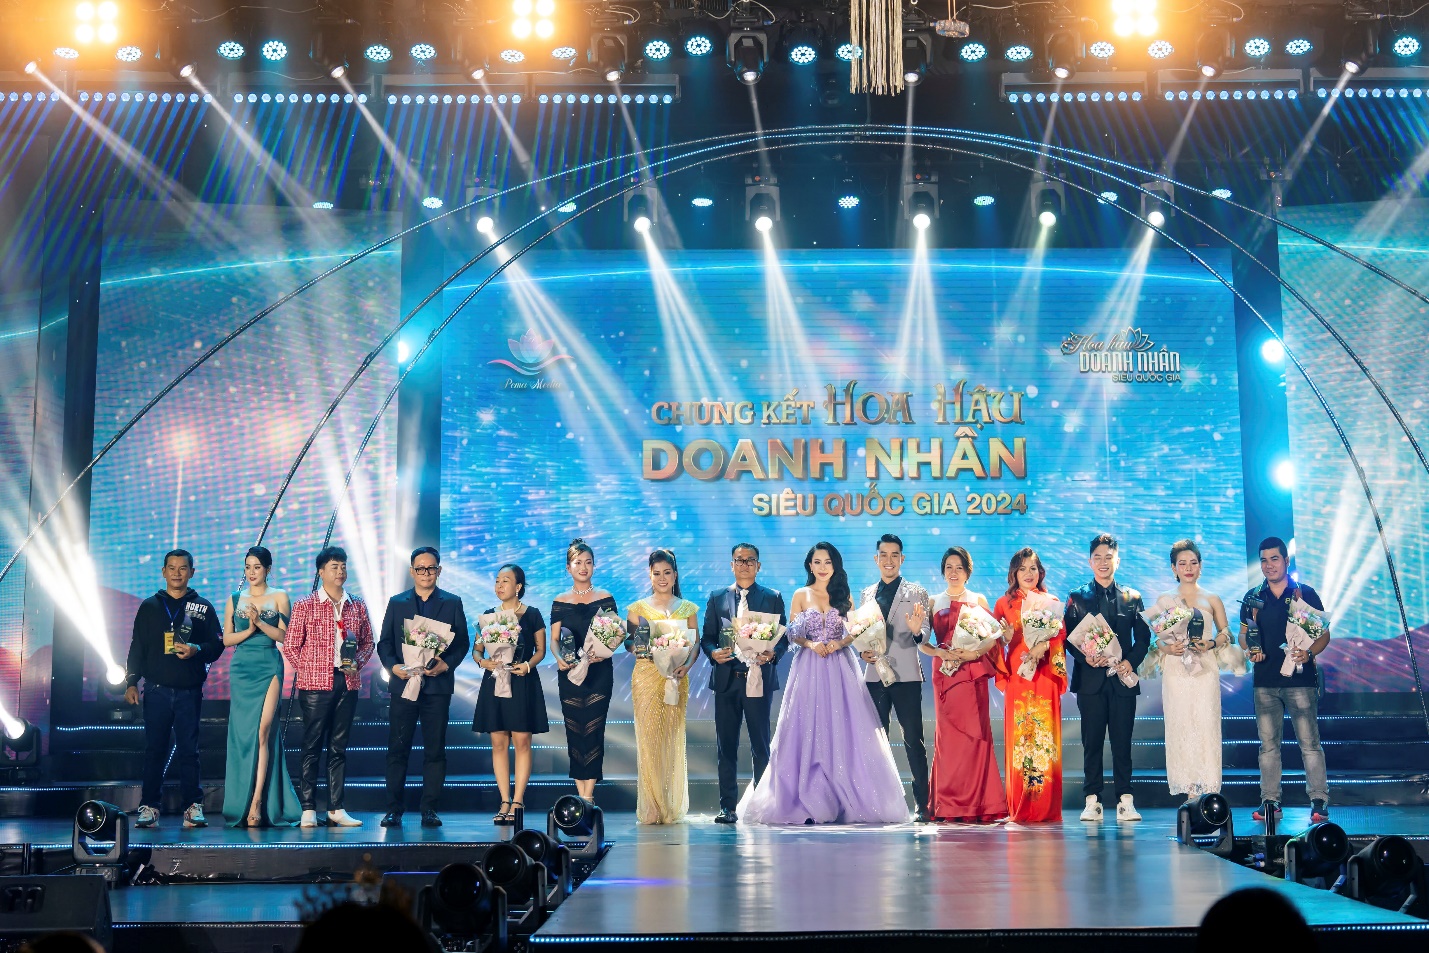 Cuộc thi này do Công ty TNHH Truyền thông và Giải trí Pema Media tổ chức và được cấp phép bởi UBND tỉnh Bà Rịa – Vũng Tàu.